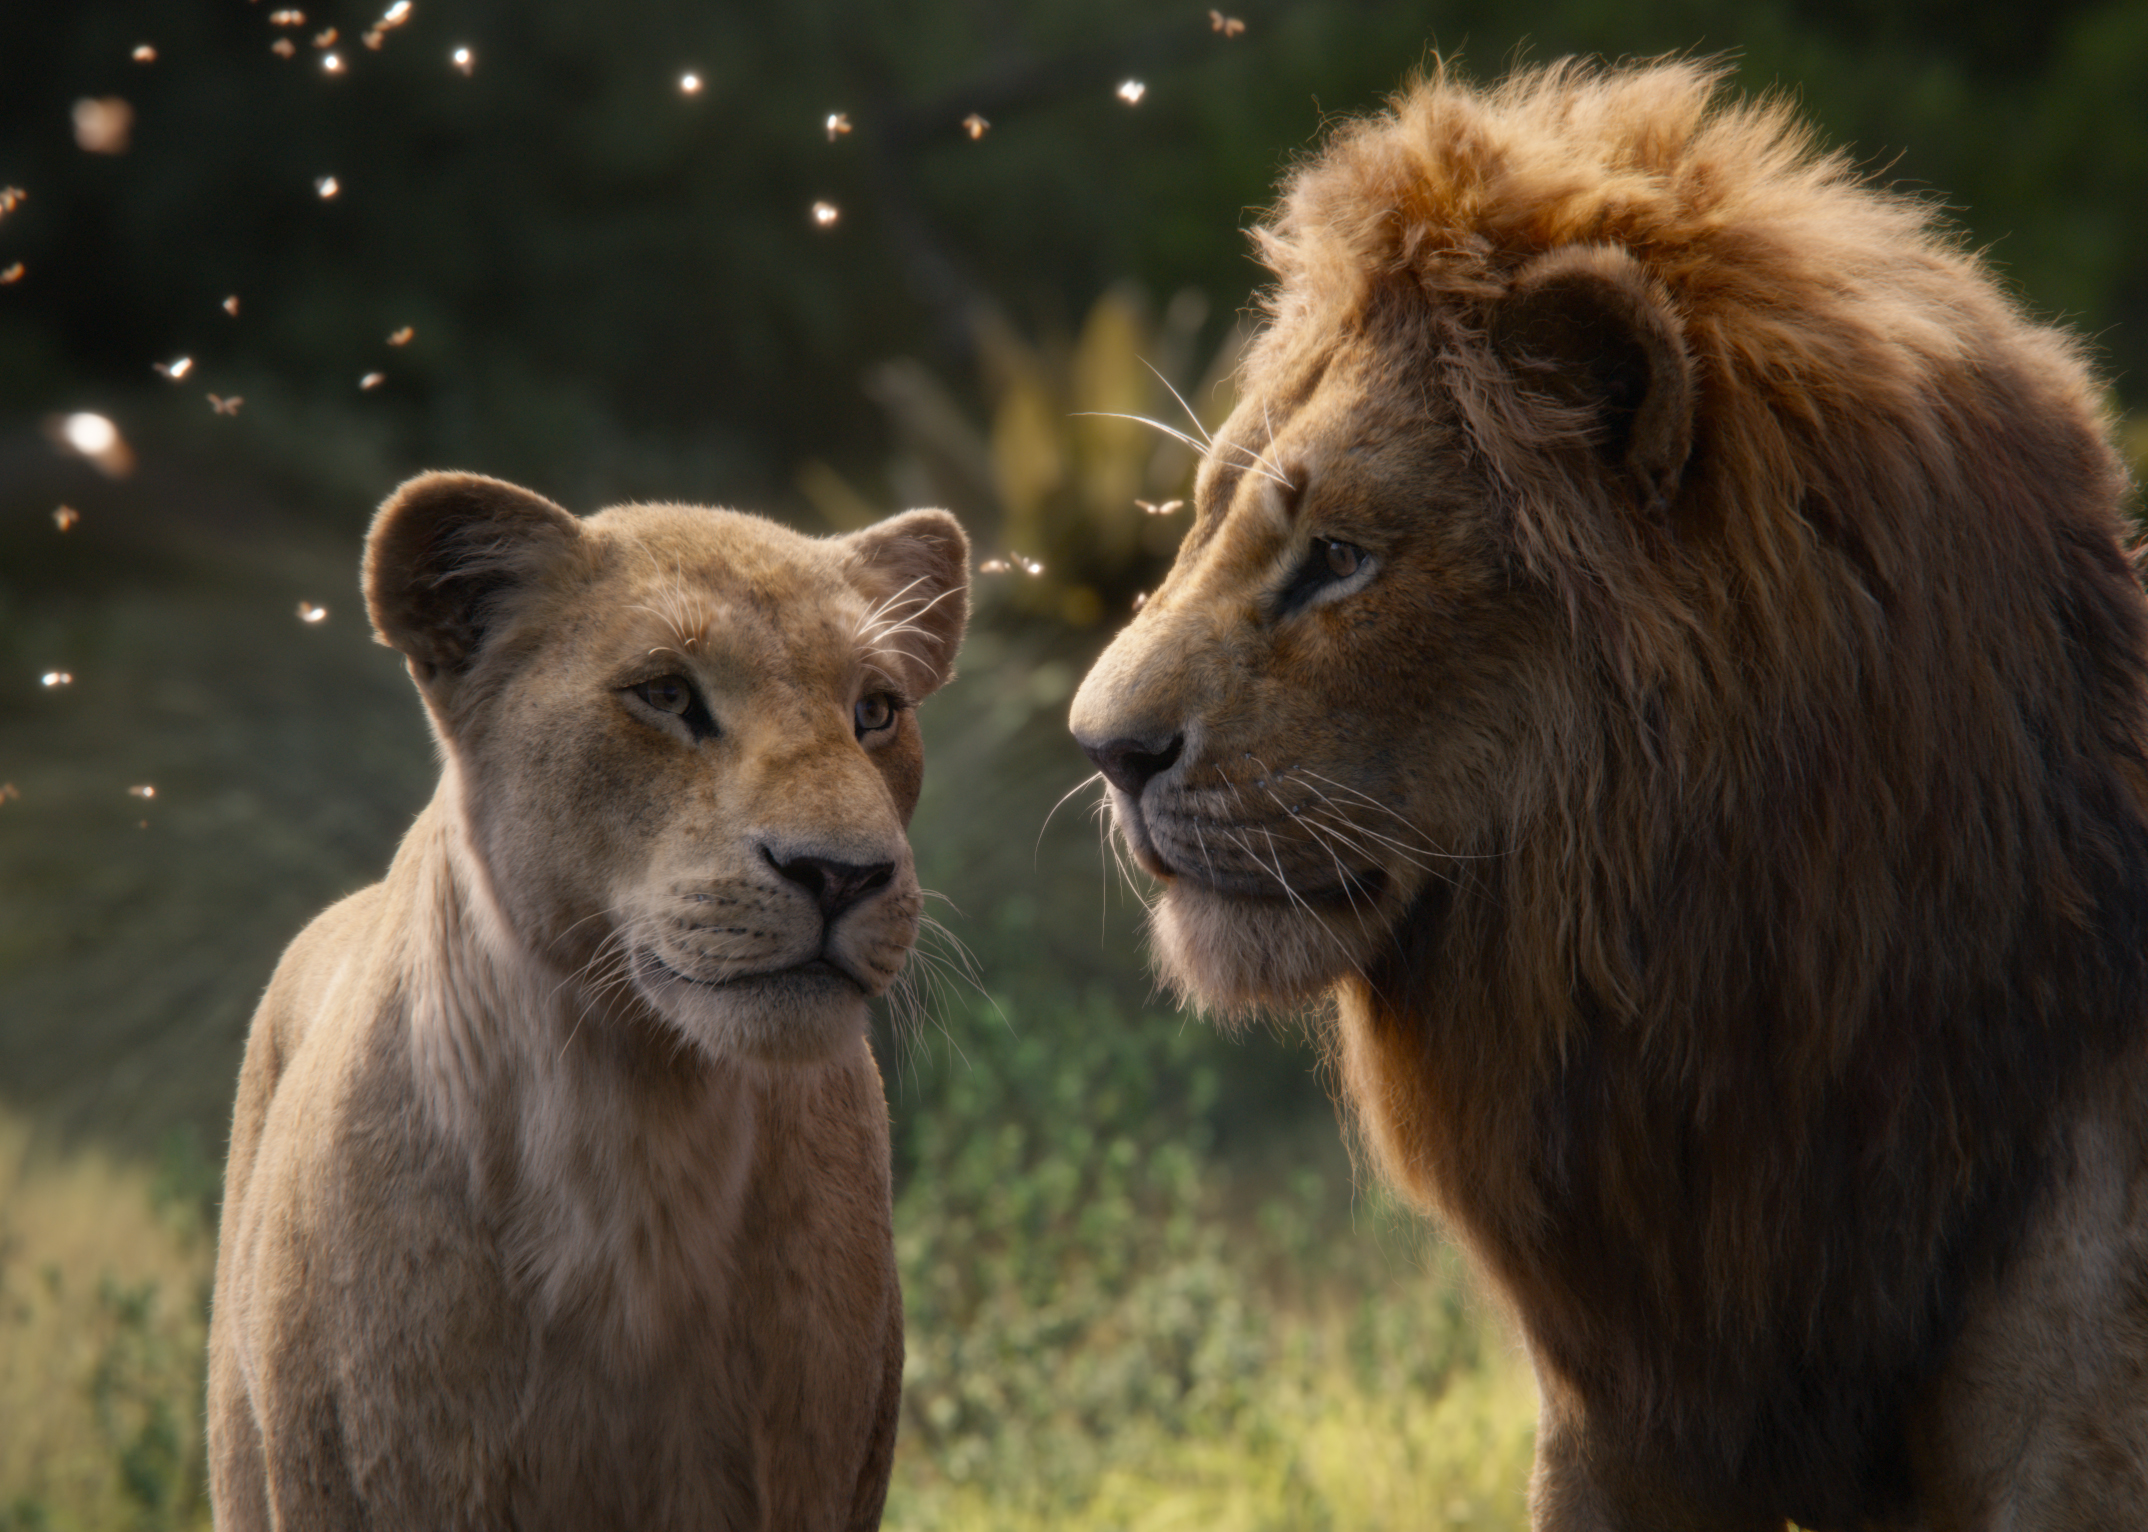 Nala The Lion King Simba The Lion King 2019 2148x1532